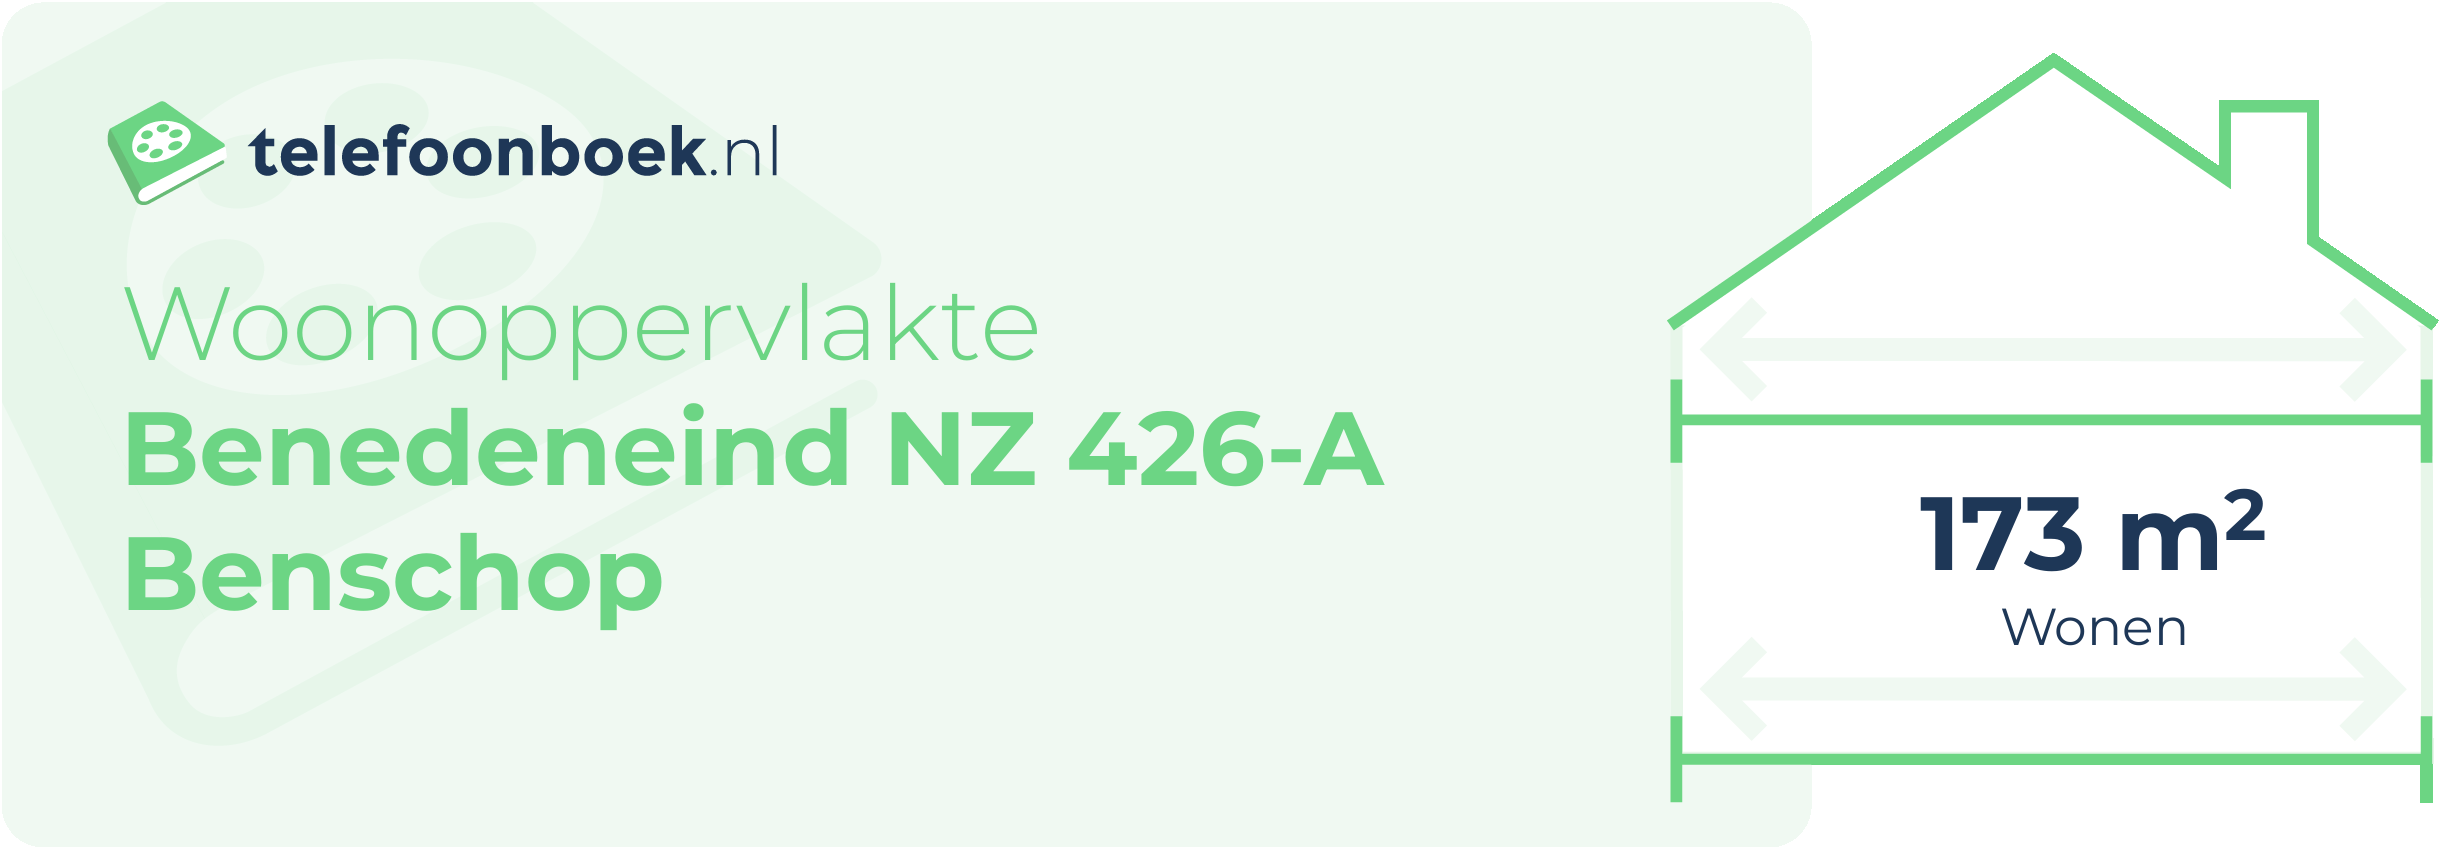 Woonoppervlakte Benedeneind NZ 426-A Benschop